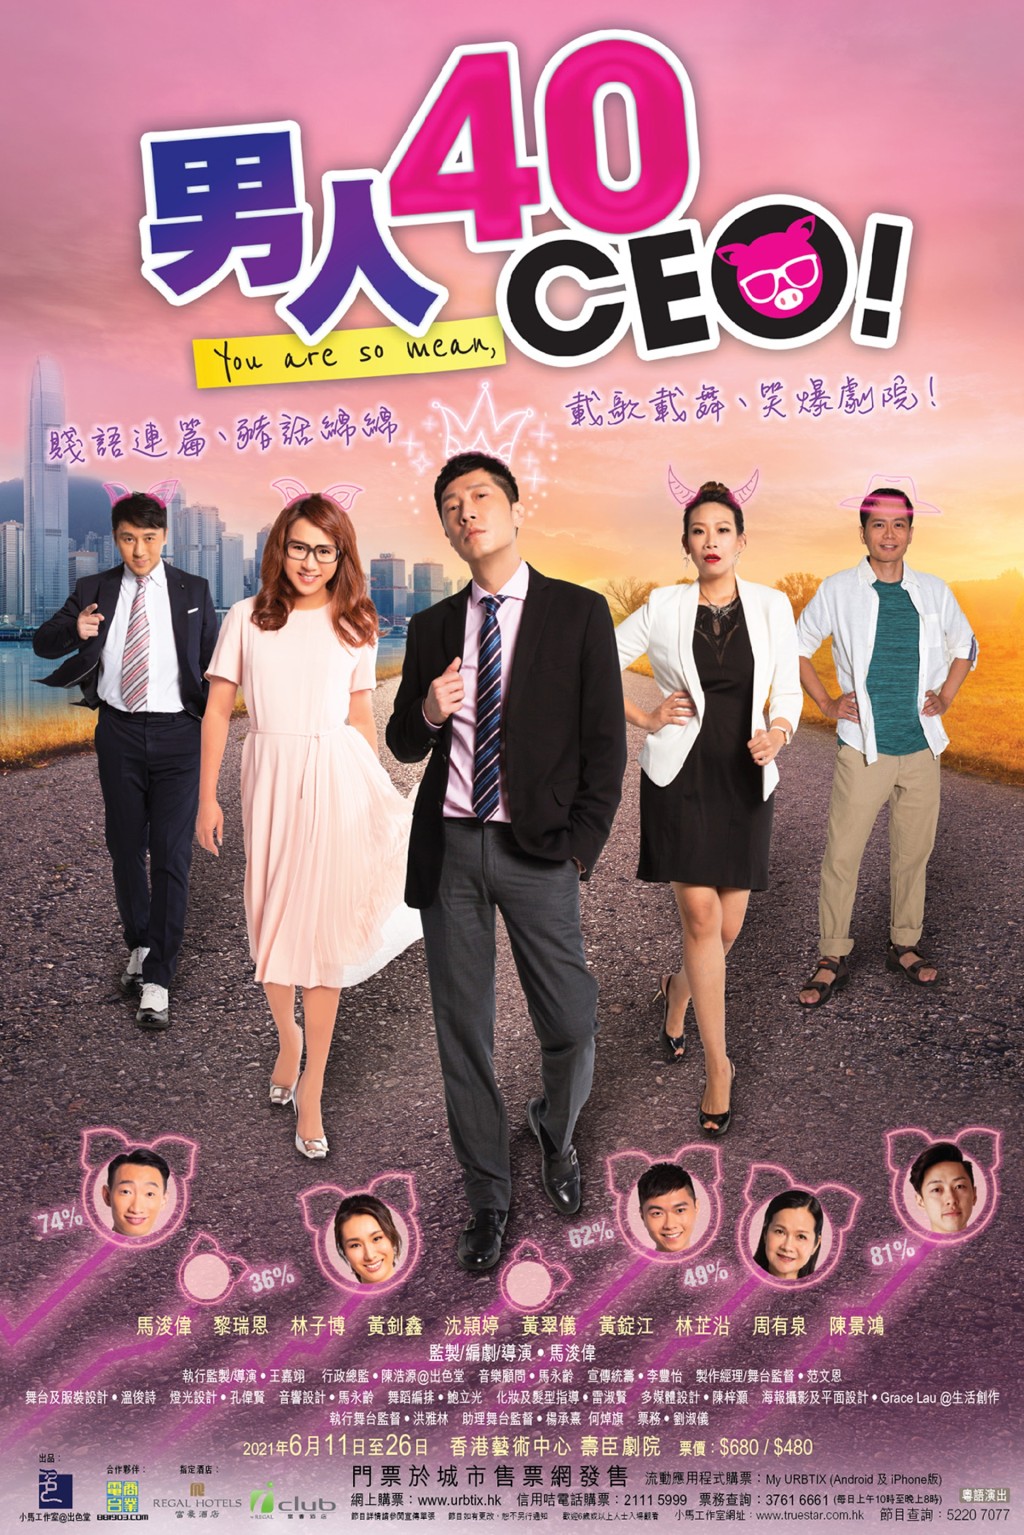 沈穎婷參演舞台劇《男人40 CEO》，當時曾表示未有打算全職重返幕前。